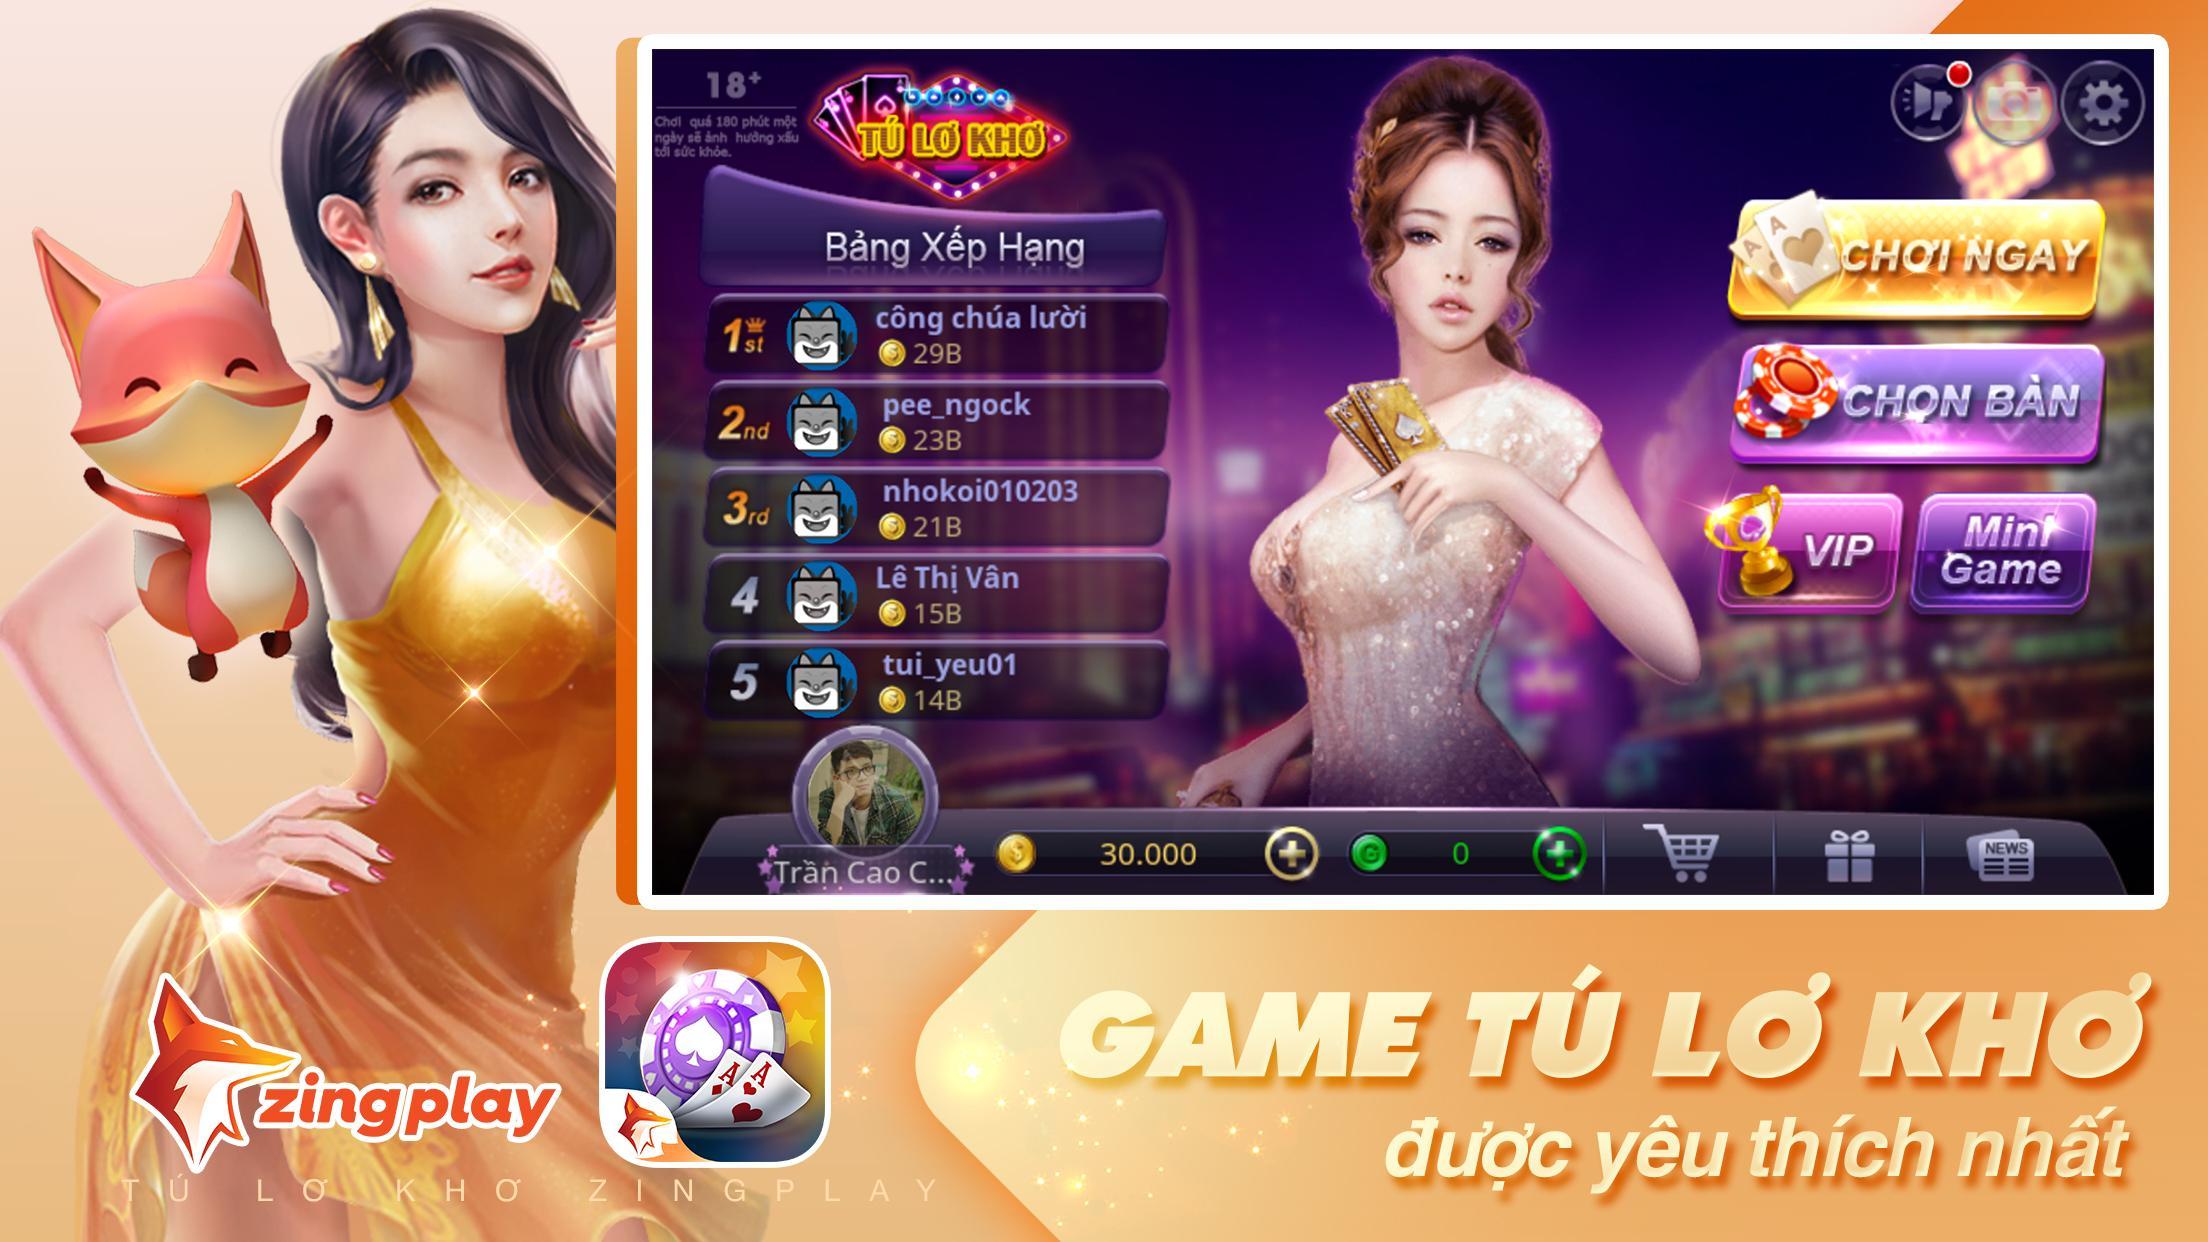 Tú Lơ Khơ - Tá Lả - Phỏm -  ZingPlay Game bài free 4.3 Screenshot 1